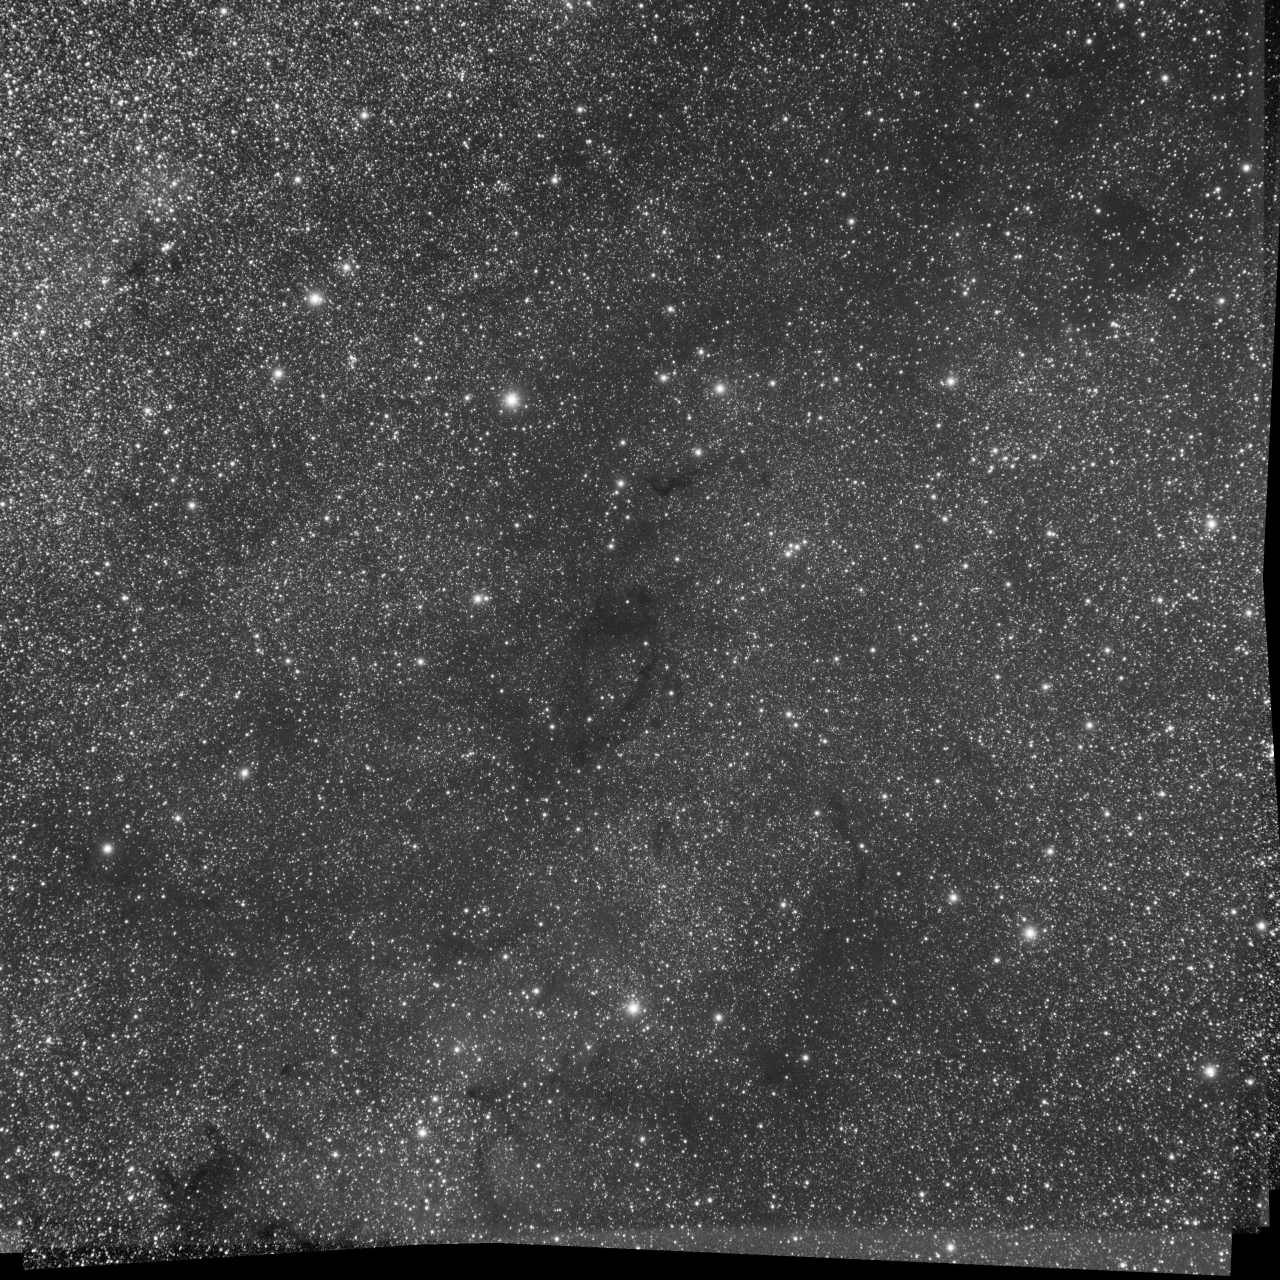 Cepheus on Barnard 170 - G